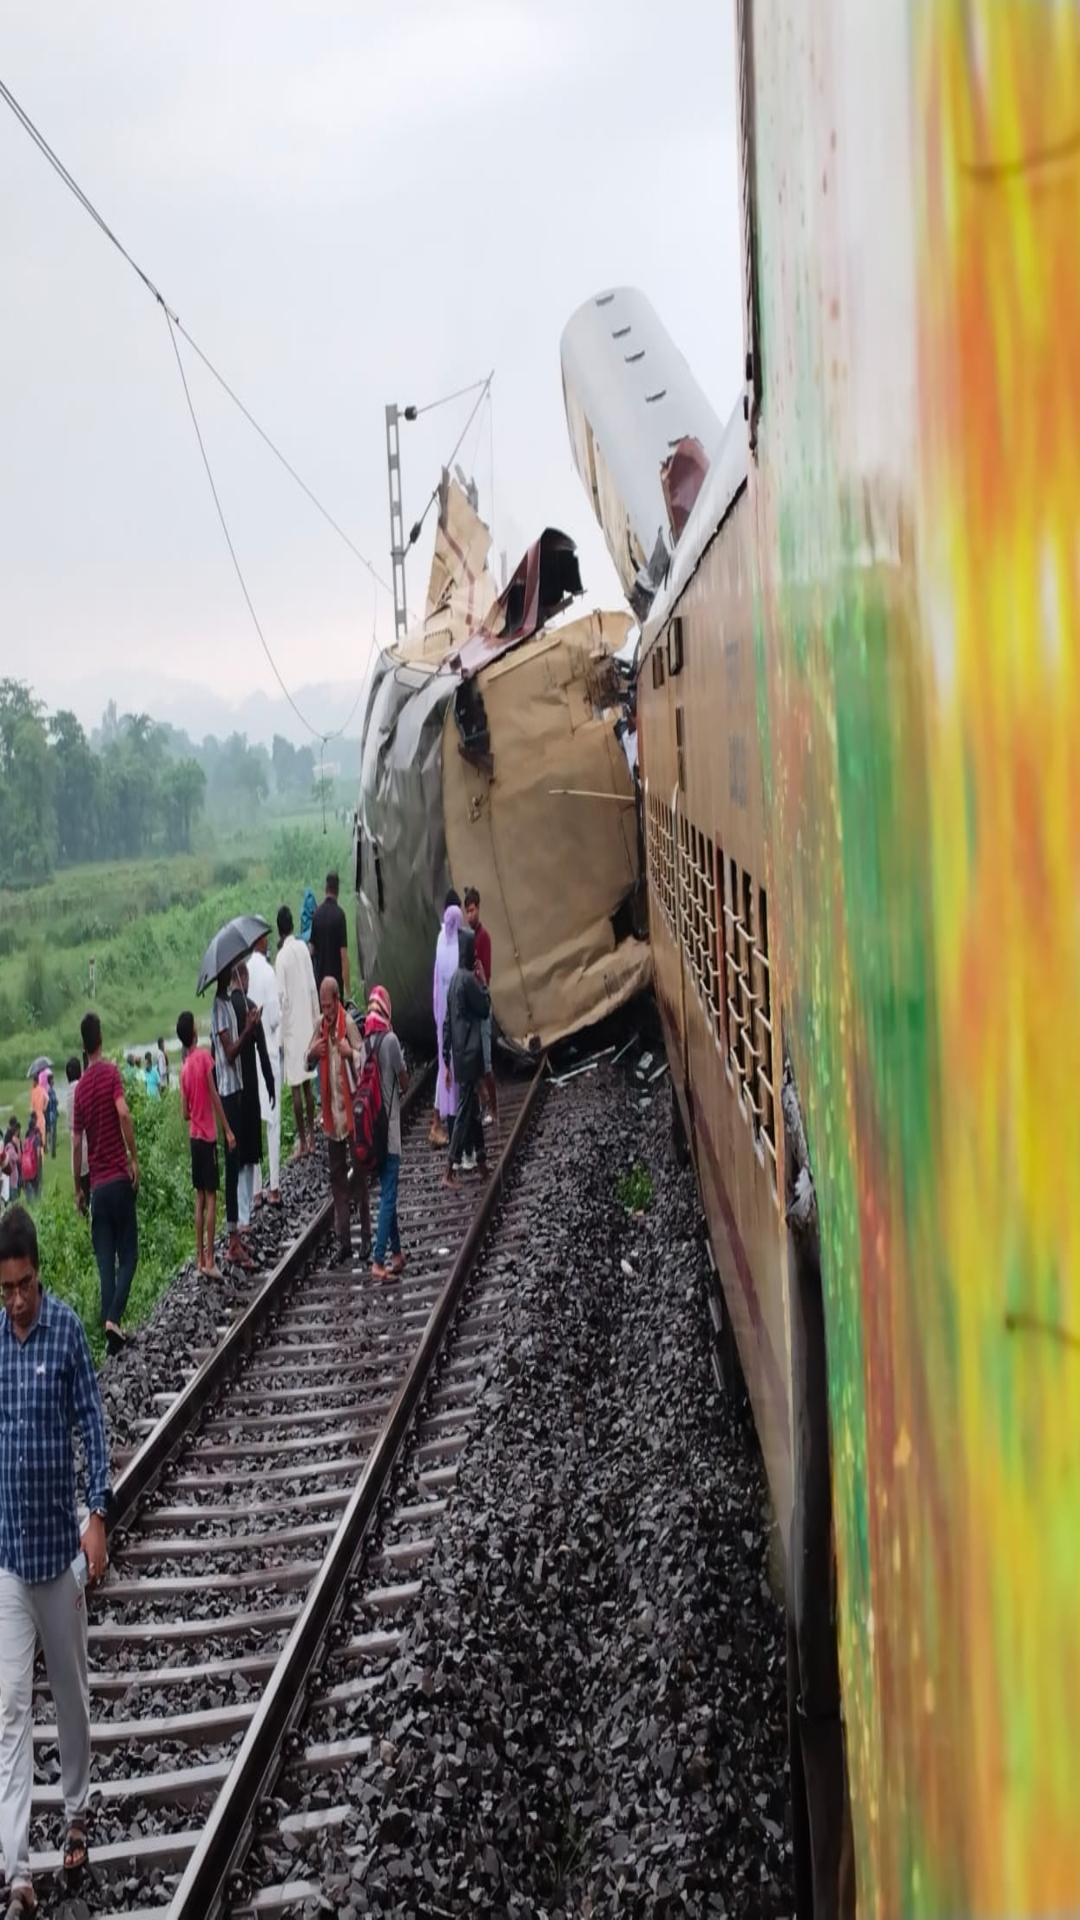  पश्चिम बंगाल: कंचनजंगा एक्सप्रेस ट्रेन में मालगाड़ी ने पीछे से मारी टक्कर, देखें तस्वीरें 